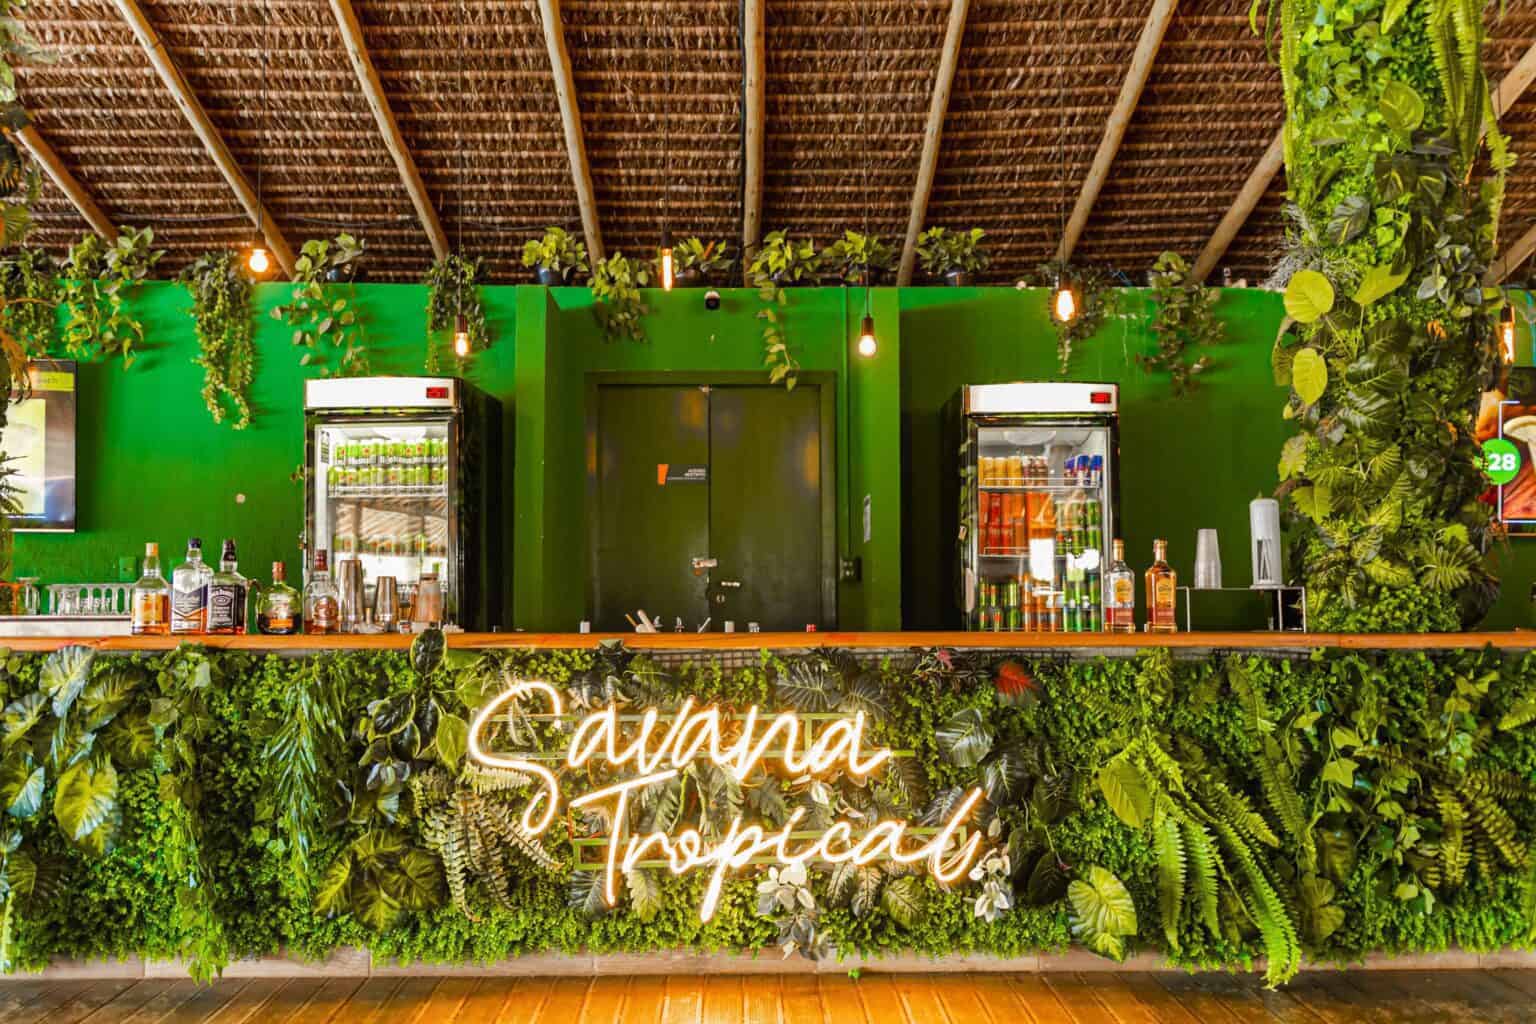 Bar em madeira com paredes verde escuro e arborizado com plantas e samambaias.